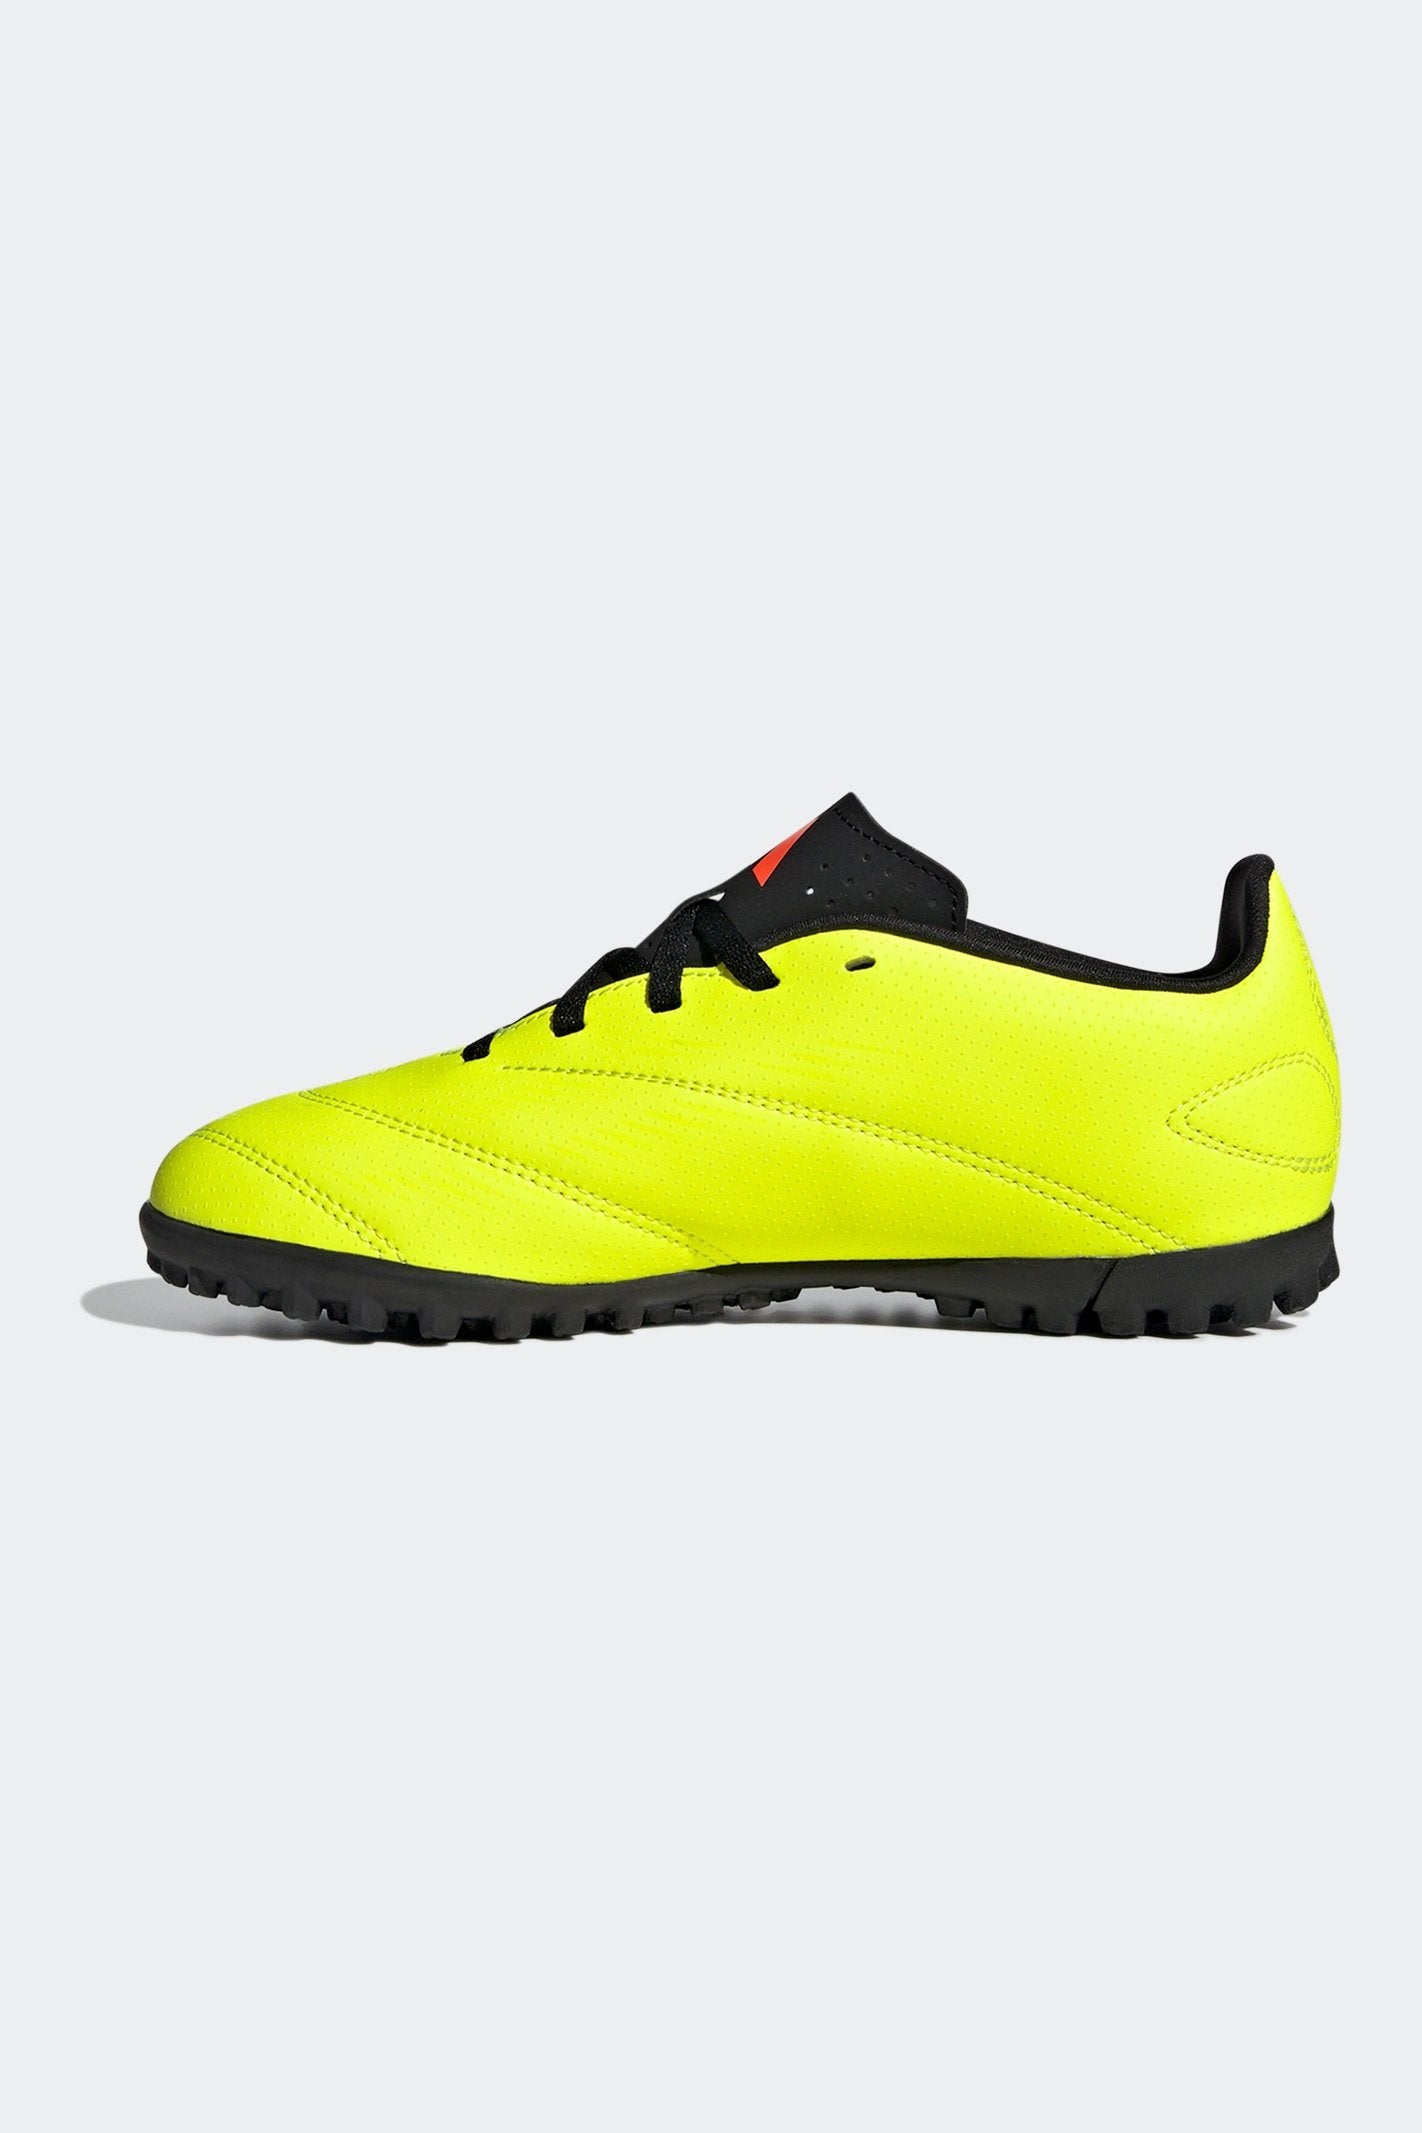 נעלי קטרגל לנוער PREDATOR CLUB בצבע צהוב זוהר ושחור